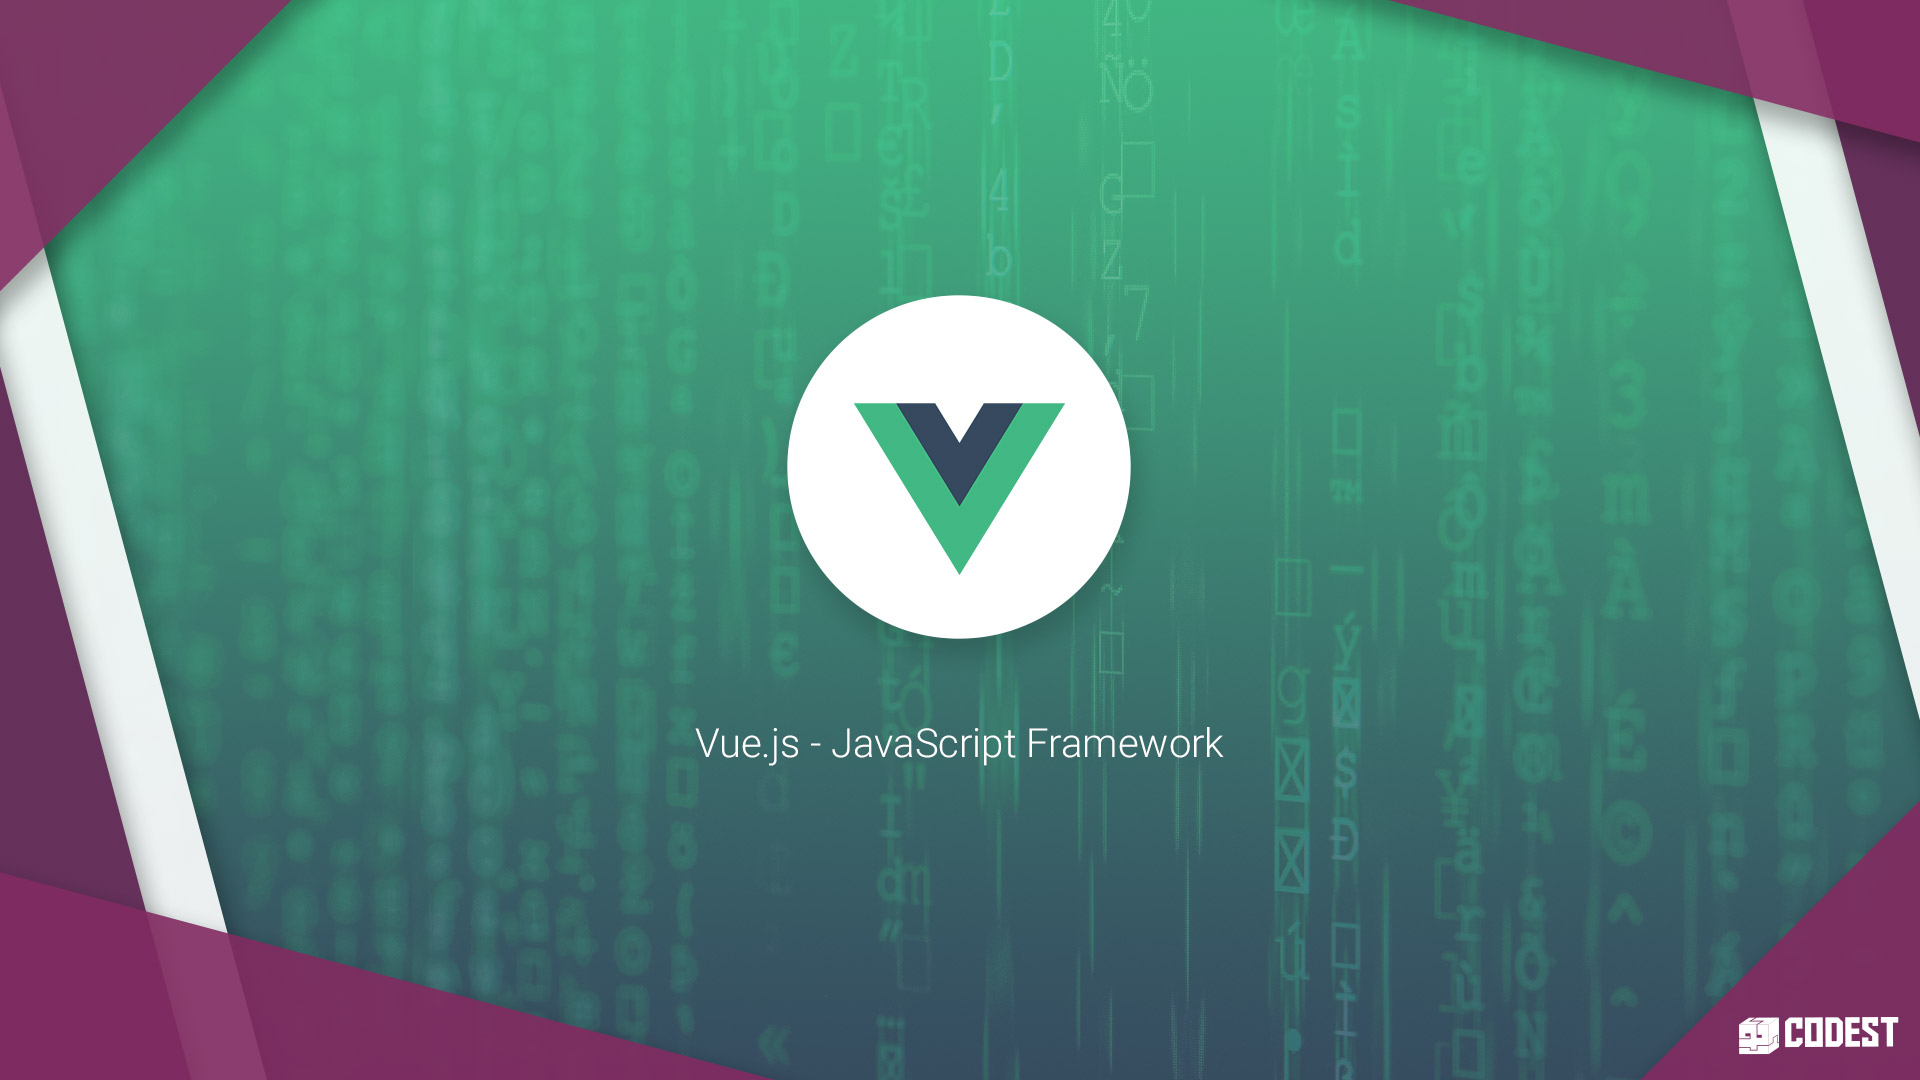 Why is Vue.js framework so effective? - Image